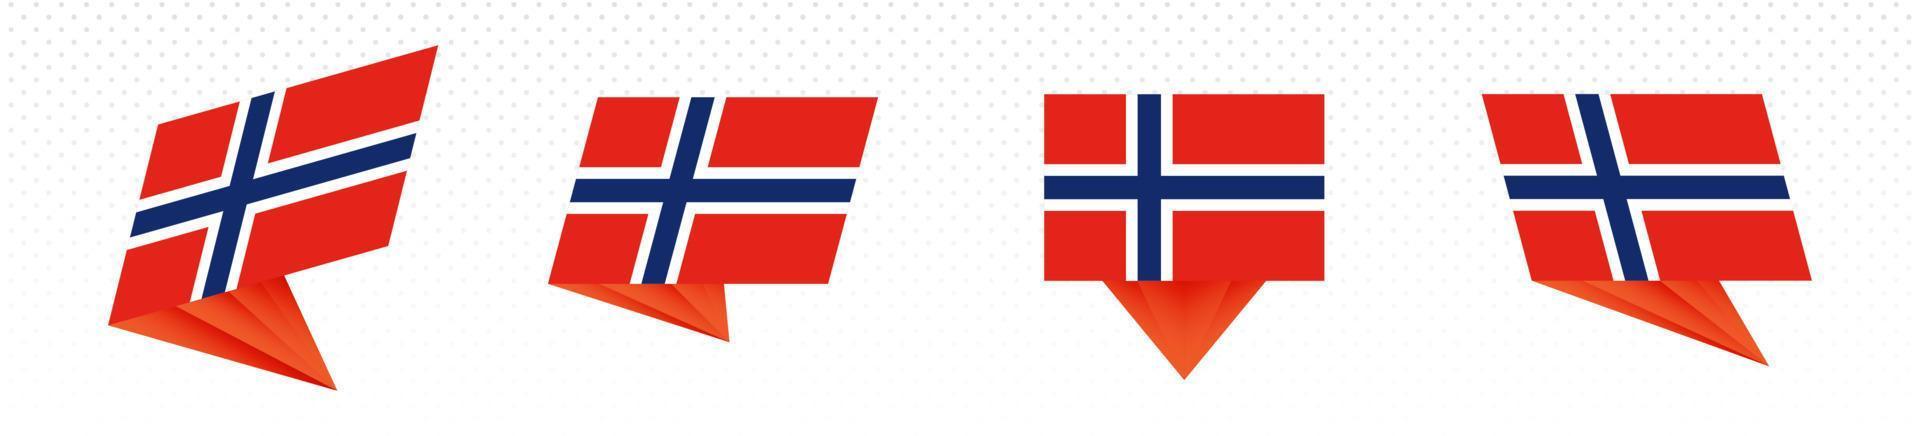 Flagge von Norwegen im modernen abstrakten Design, Flaggensatz. vektor